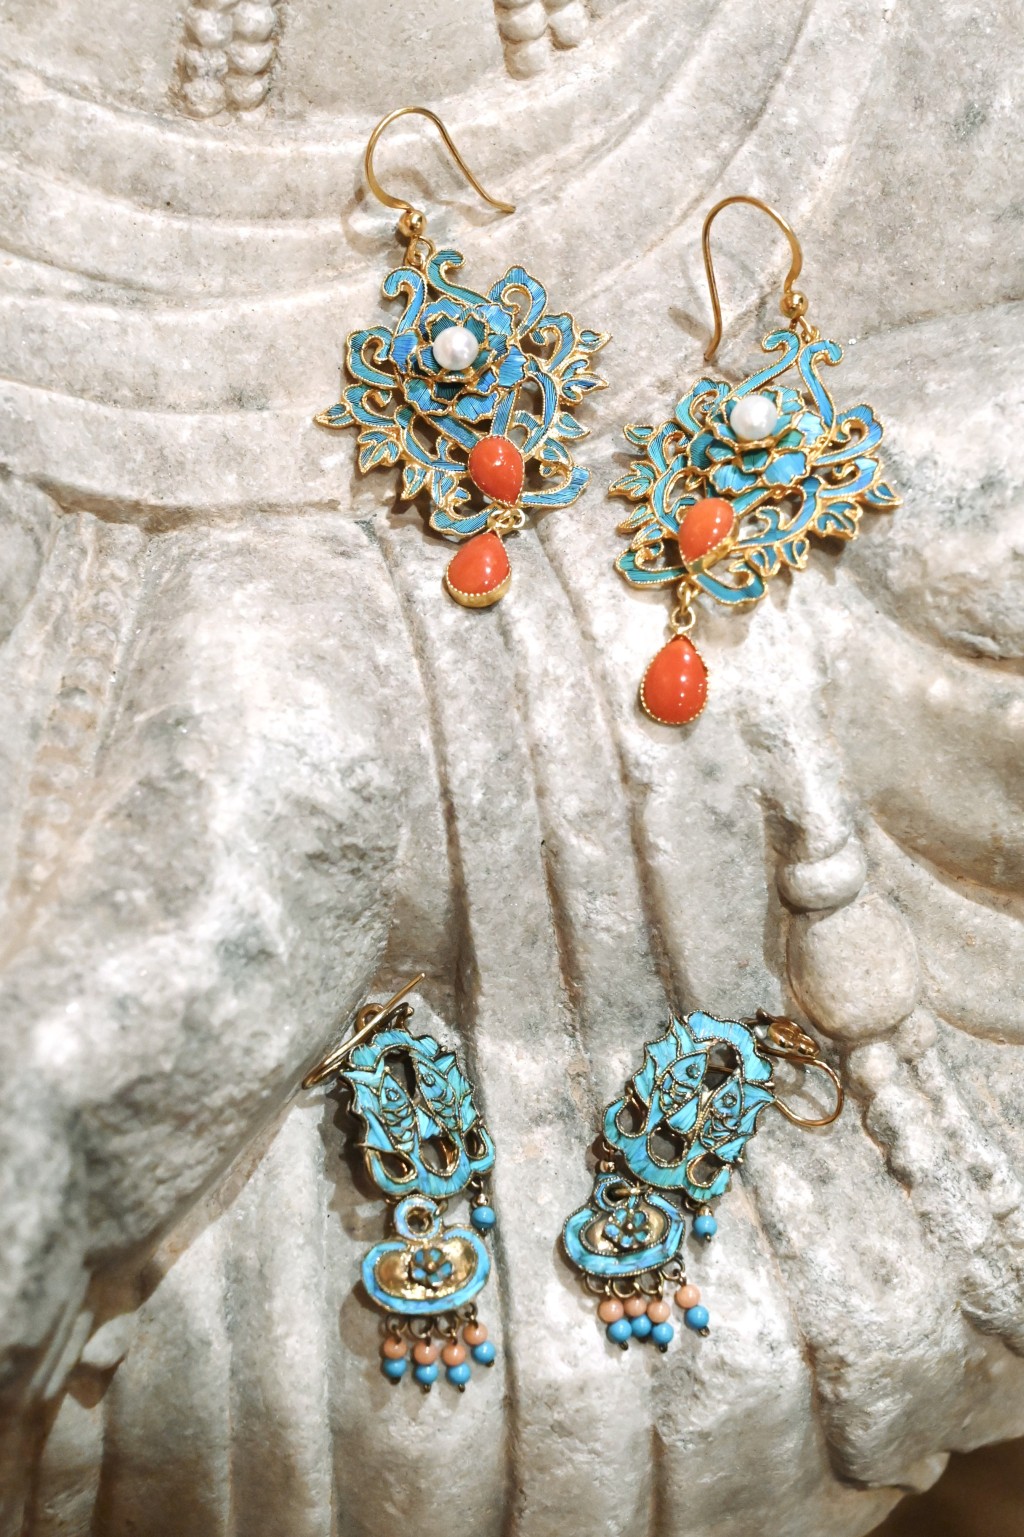 這兩款點翠耳環，乃由Loretta從日本一家古董店買回來的點翠冠冕拆下來再重新設計的，加入珍珠及珊瑚，拼湊出奪目視效。